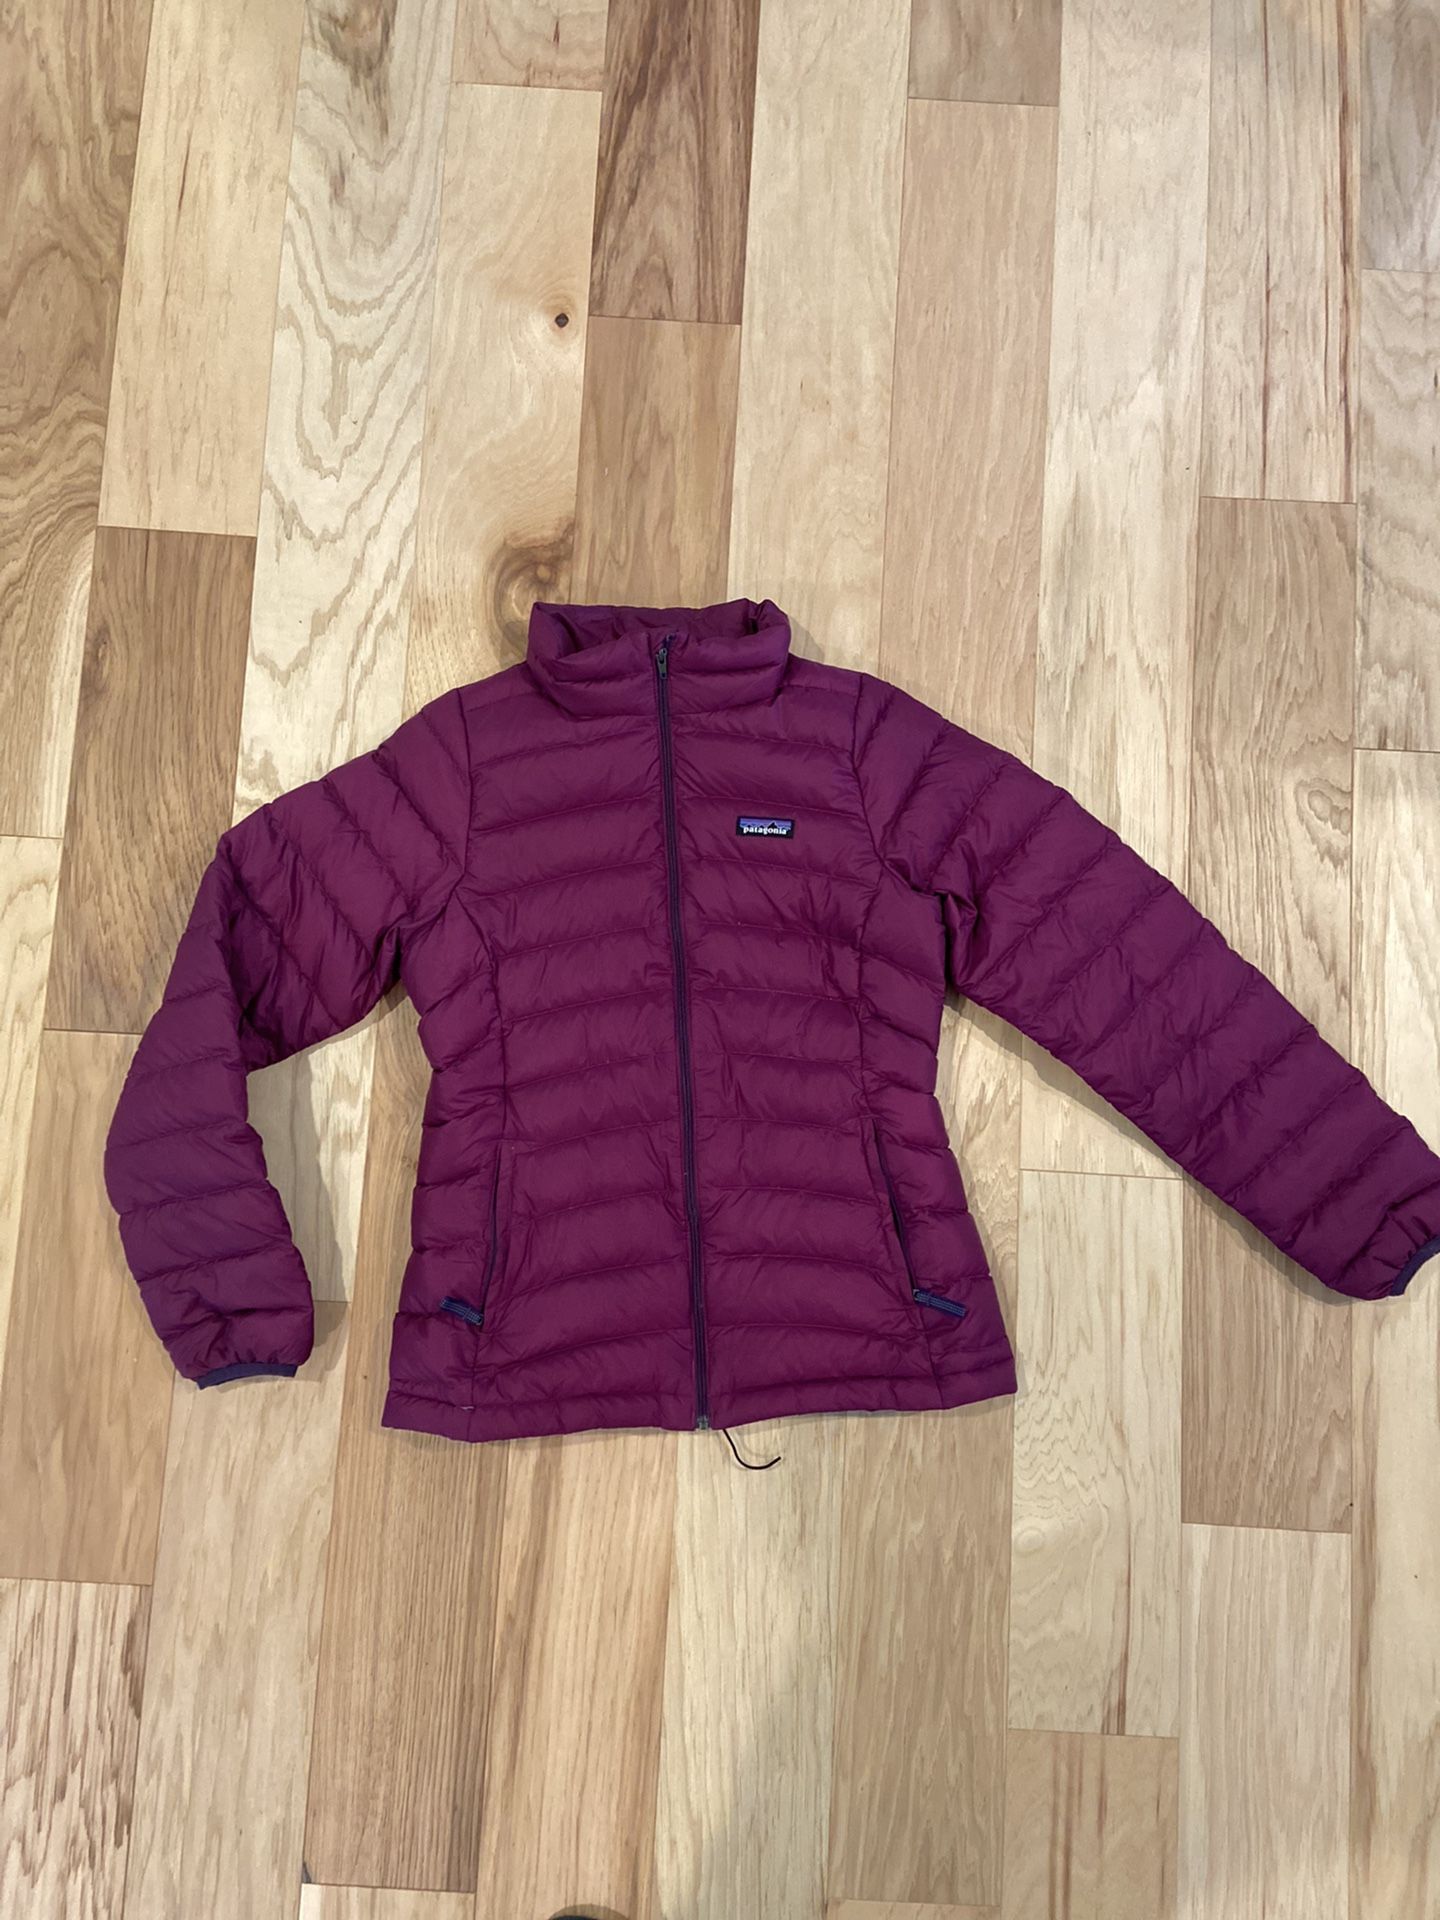 Girls Patagonia down jacket -size XL (14)